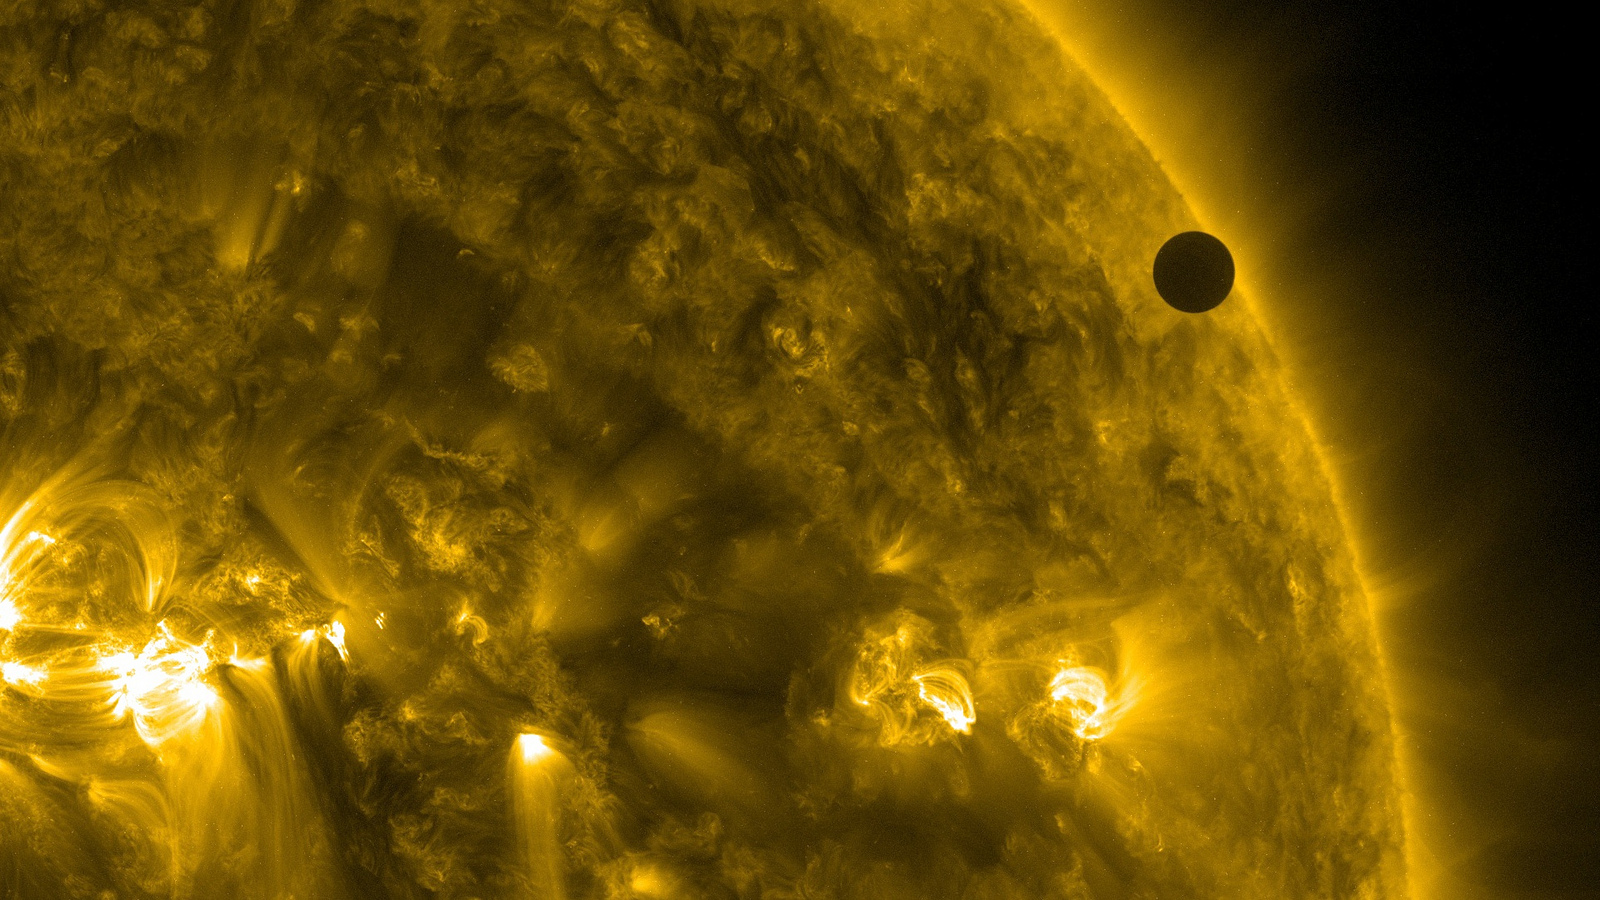 Vénus, ici de passage devant le Soleil, présente une période de rotation synodique (117 jours) largement inférieure à sa période de rotation sidérale (243 jours). © Nasa Goddard Space Flight Center, Flickr, CC by 2.0